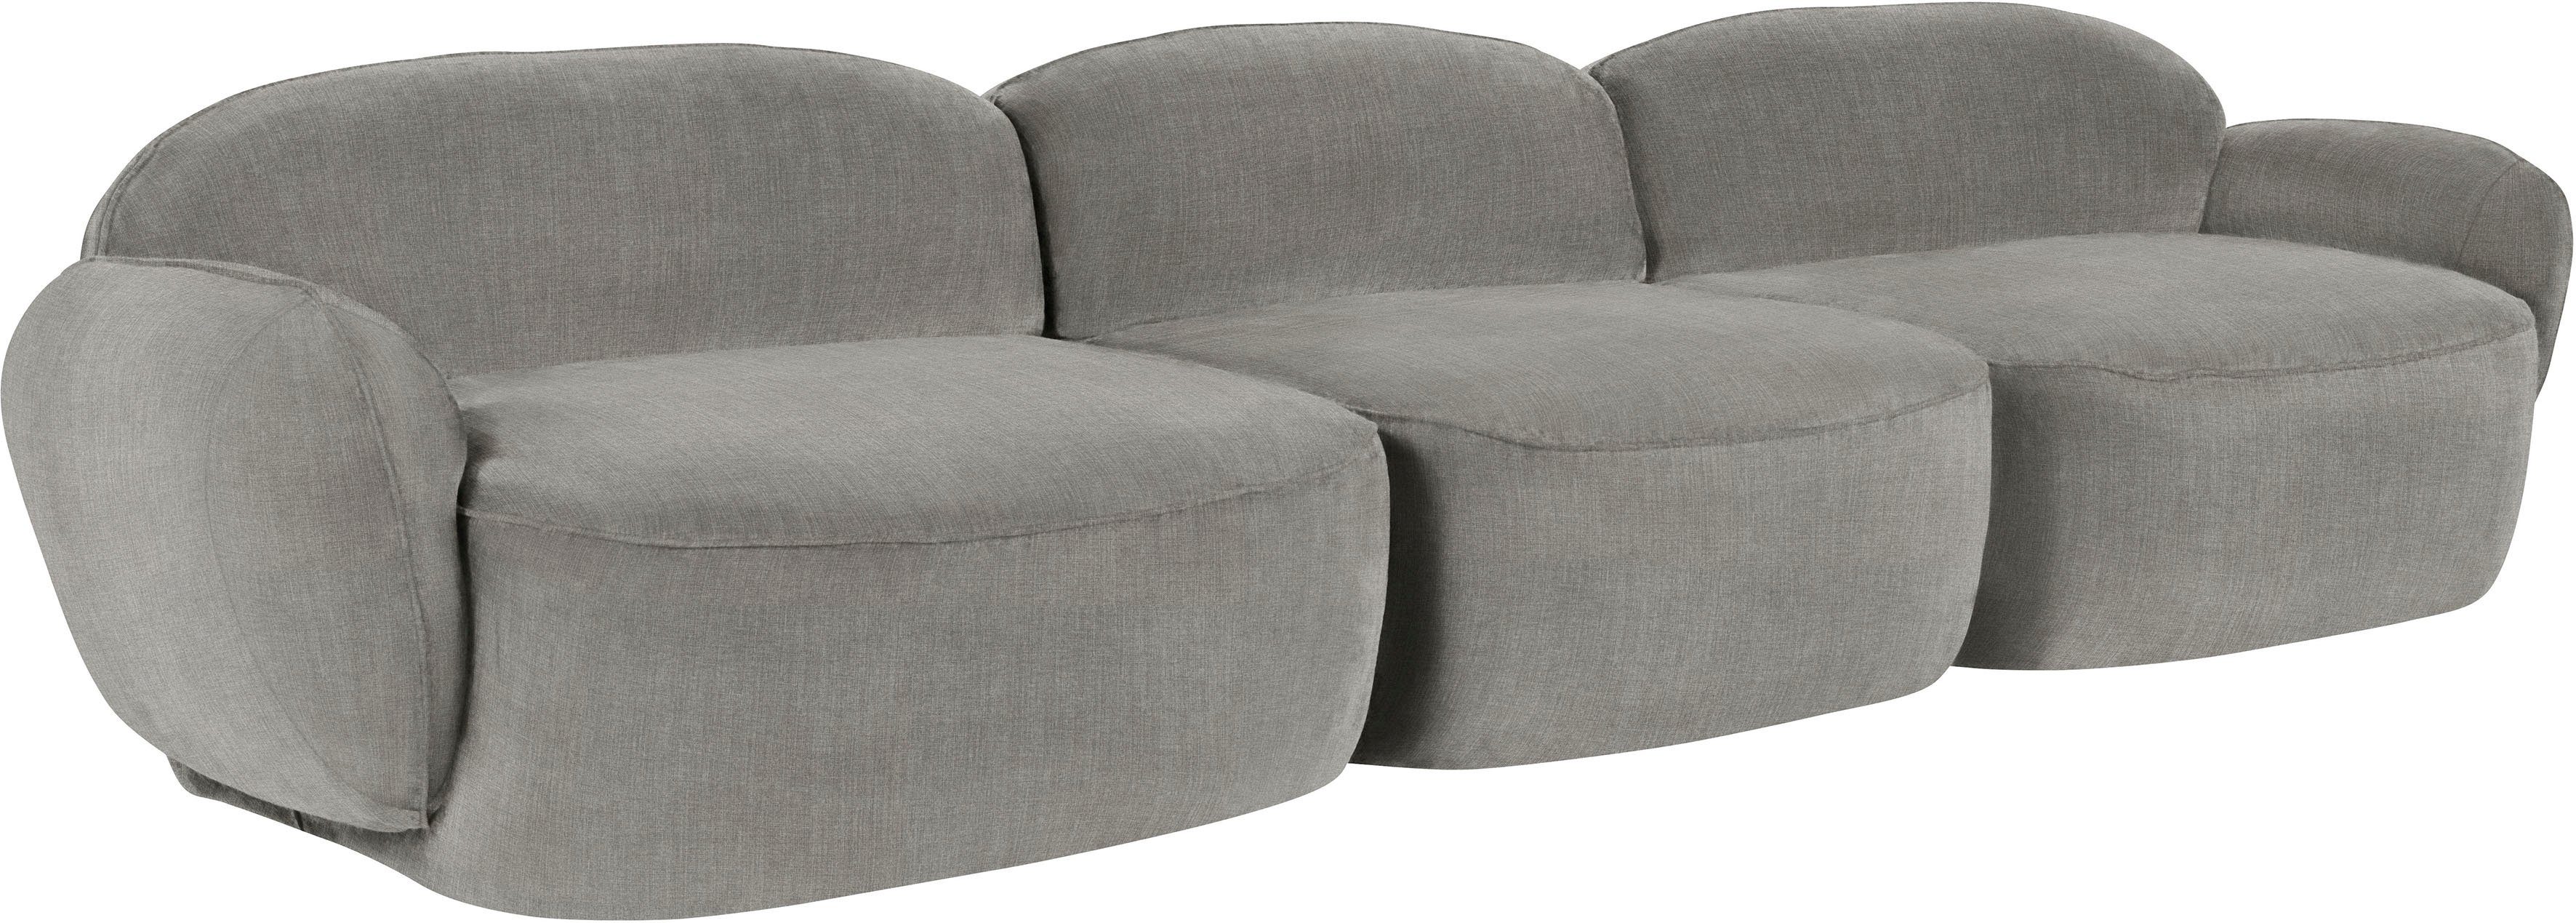 Bubble, furninova im komfortabel 3,5-Sitzer Memoryschaum, skandinavischen Design durch